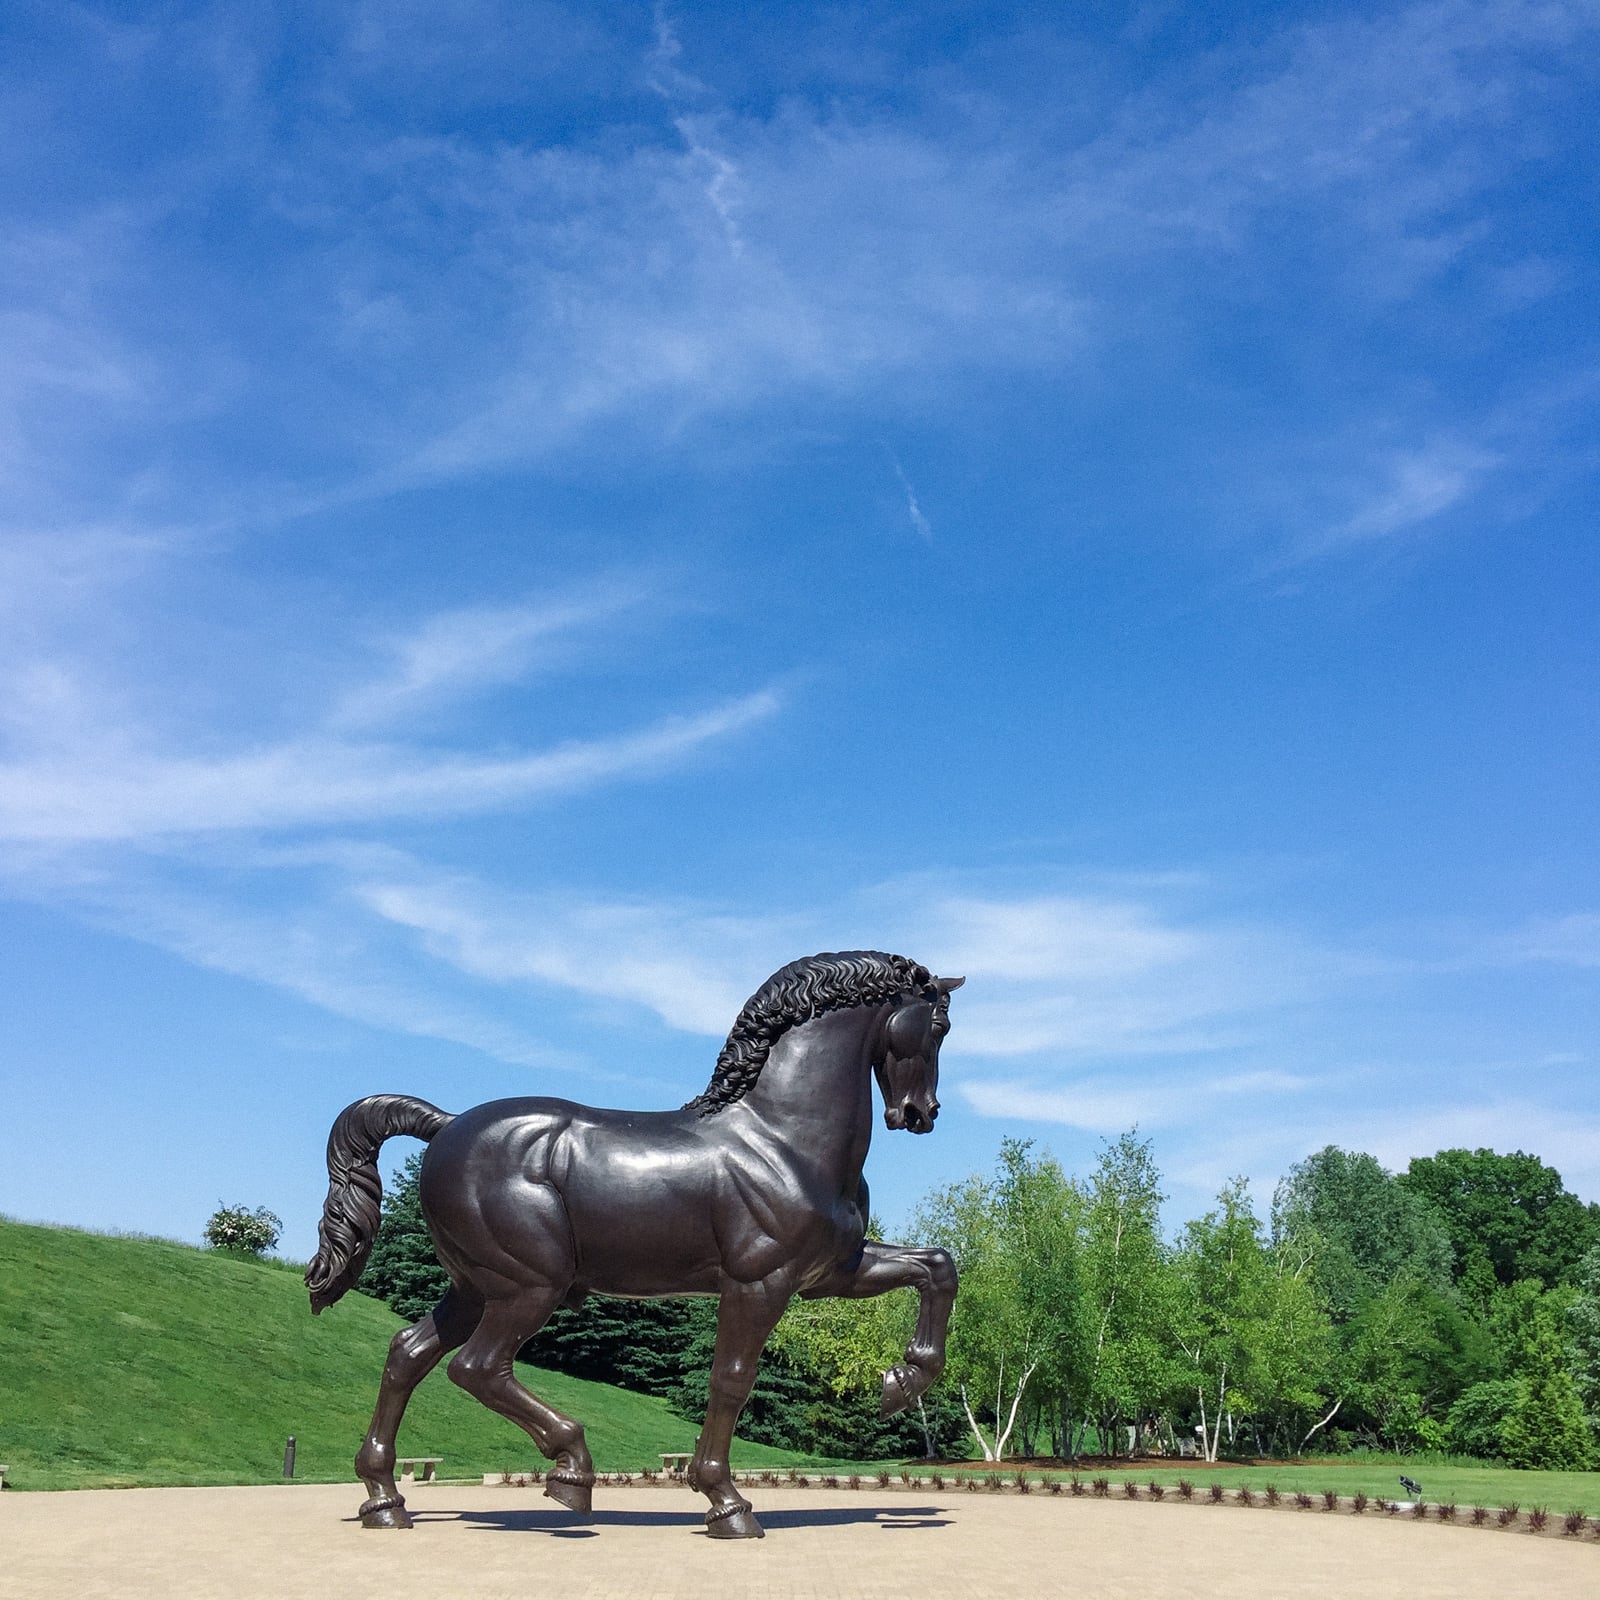 Leonardo da Vinci’s Horse at the Frederik Meijer Gardens & Sculpture Park